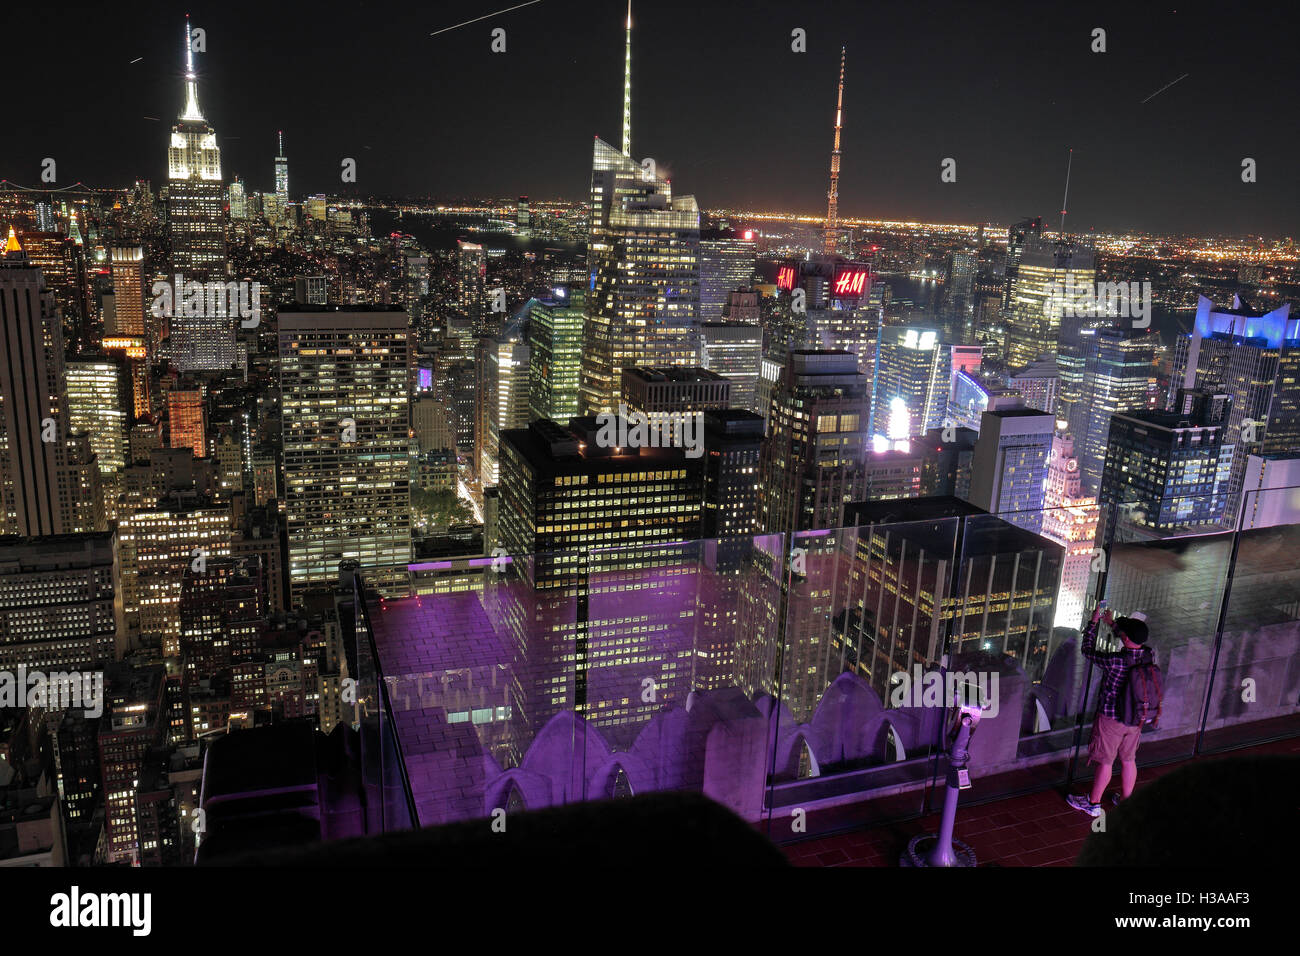 Luftbild von der "Top of the World" Aussichtsplattform in Richtung Times Square & Innenstadt von Manhattan, New York. Stockfoto